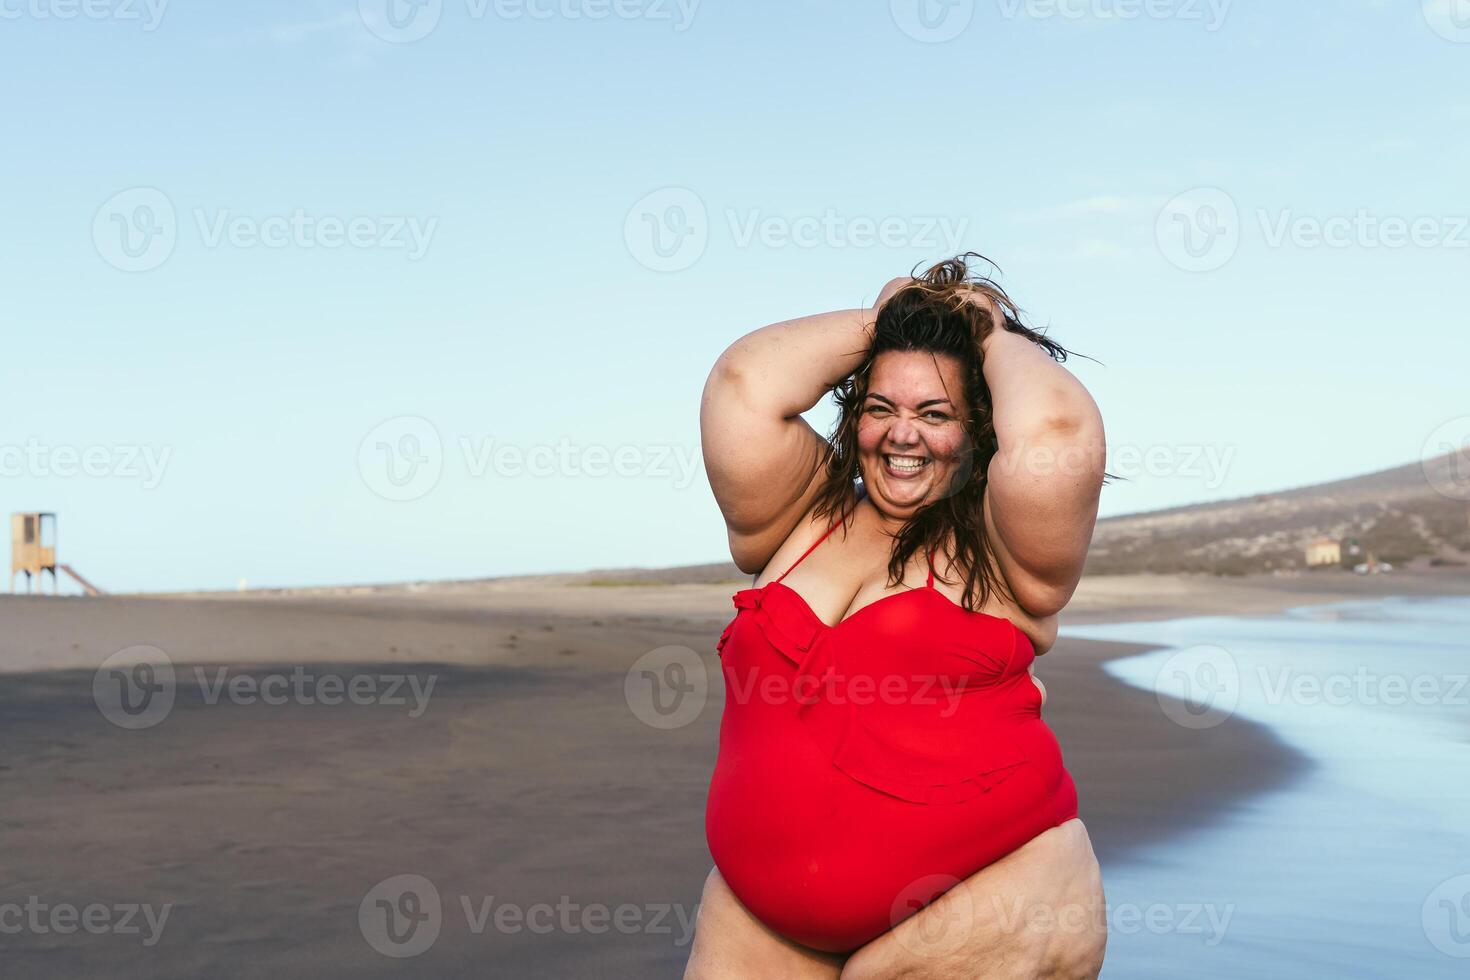 contento más Talla mujer posando en el playa - curvilíneo exceso de peso modelo teniendo divertido durante vacaciones en tropical destino - terminado Talla confidente persona concepto foto